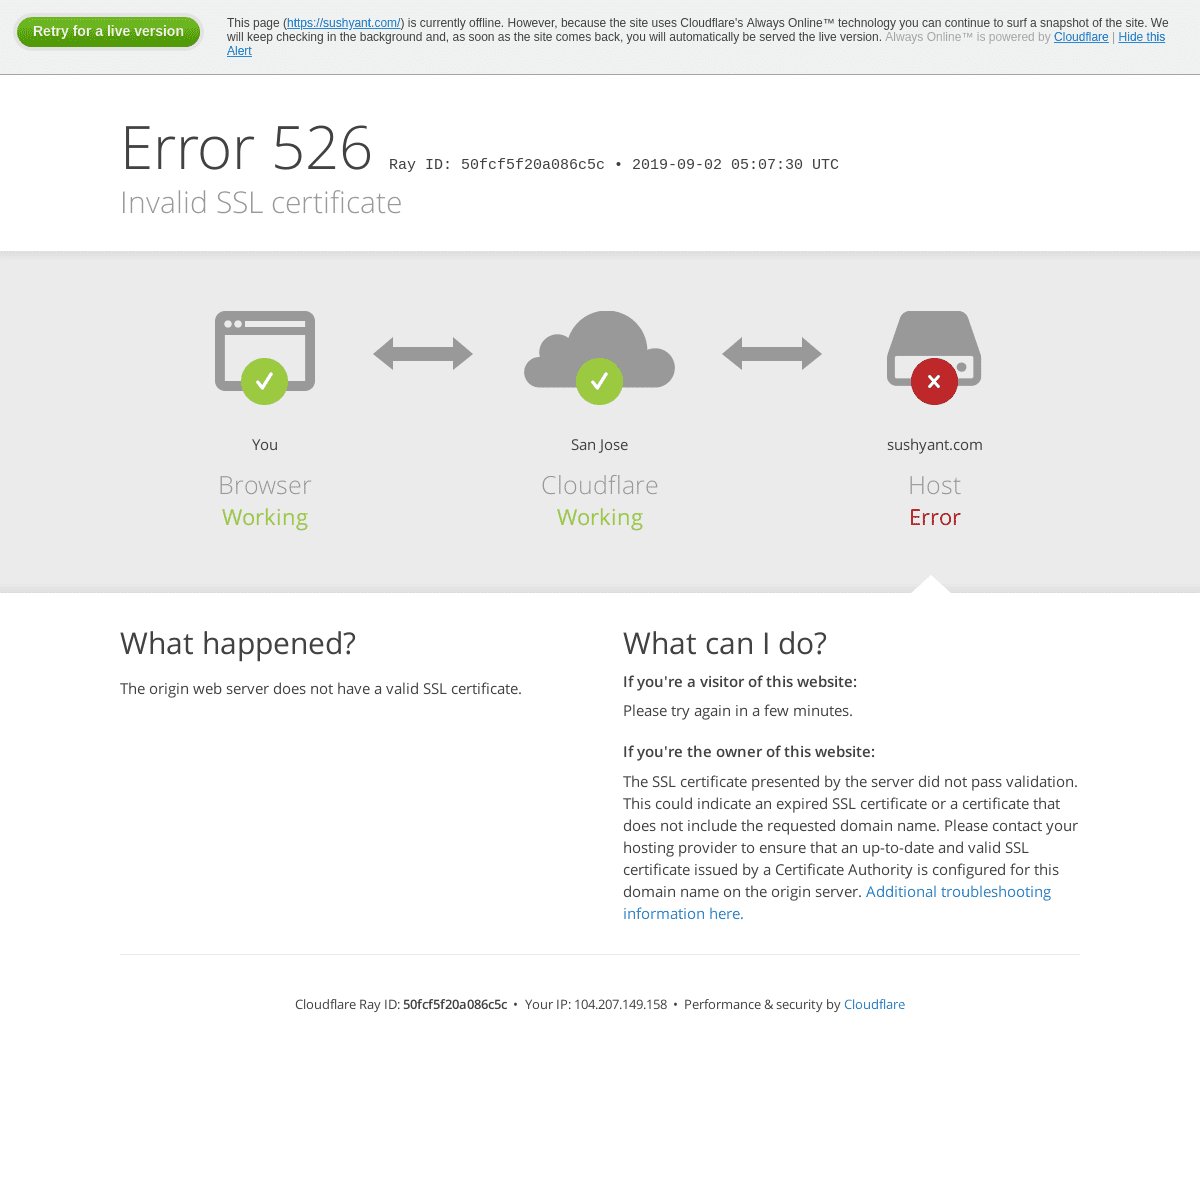 sushyant.com | 526: Invalid SSL certificate